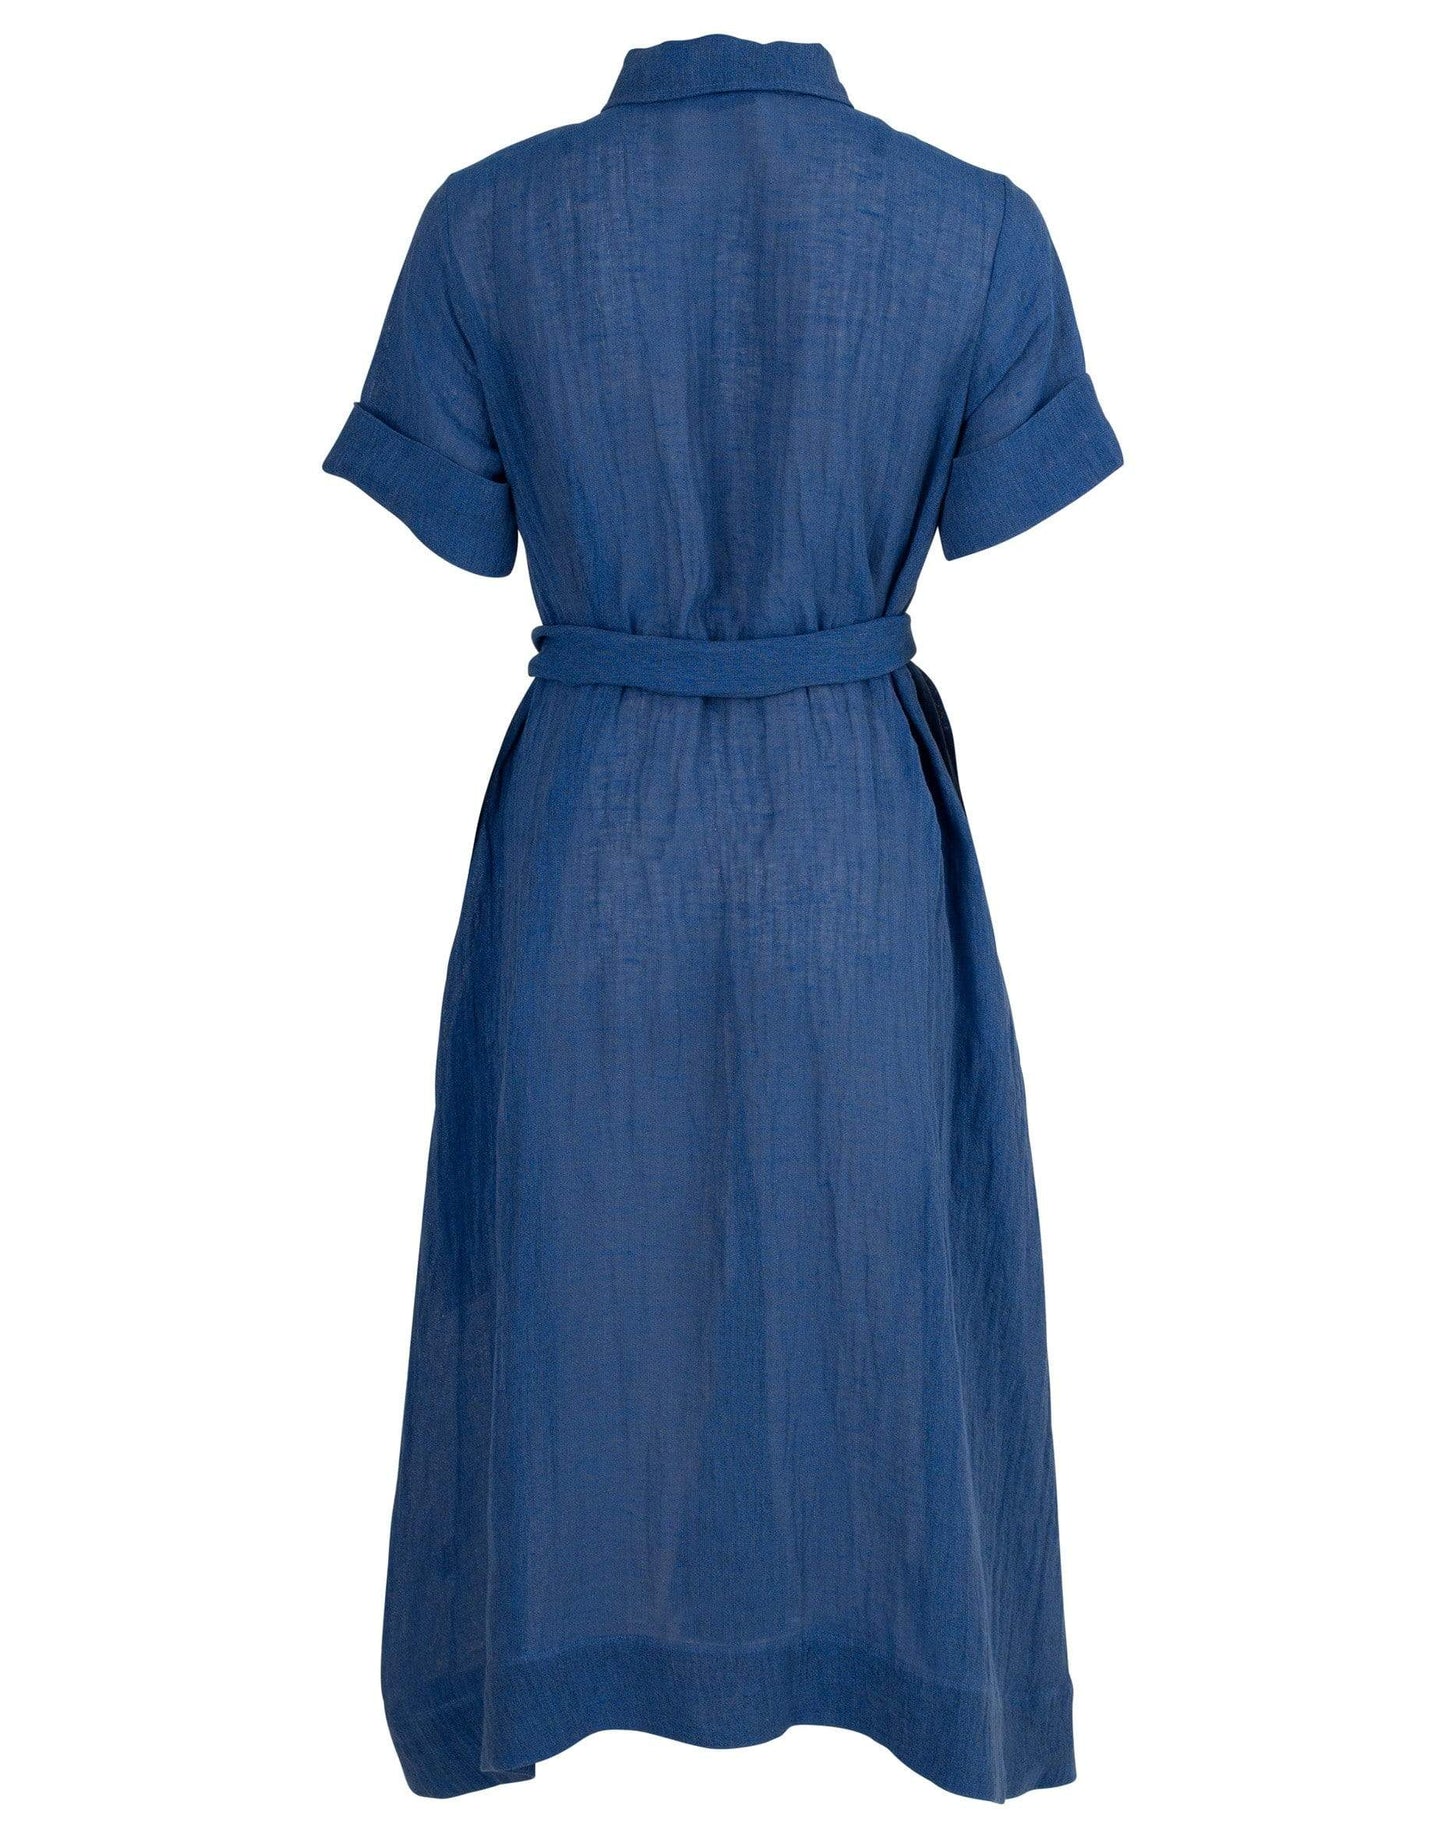 LISA MARIE FERNANDEZ-Moroccan Blue Shirt Dress-